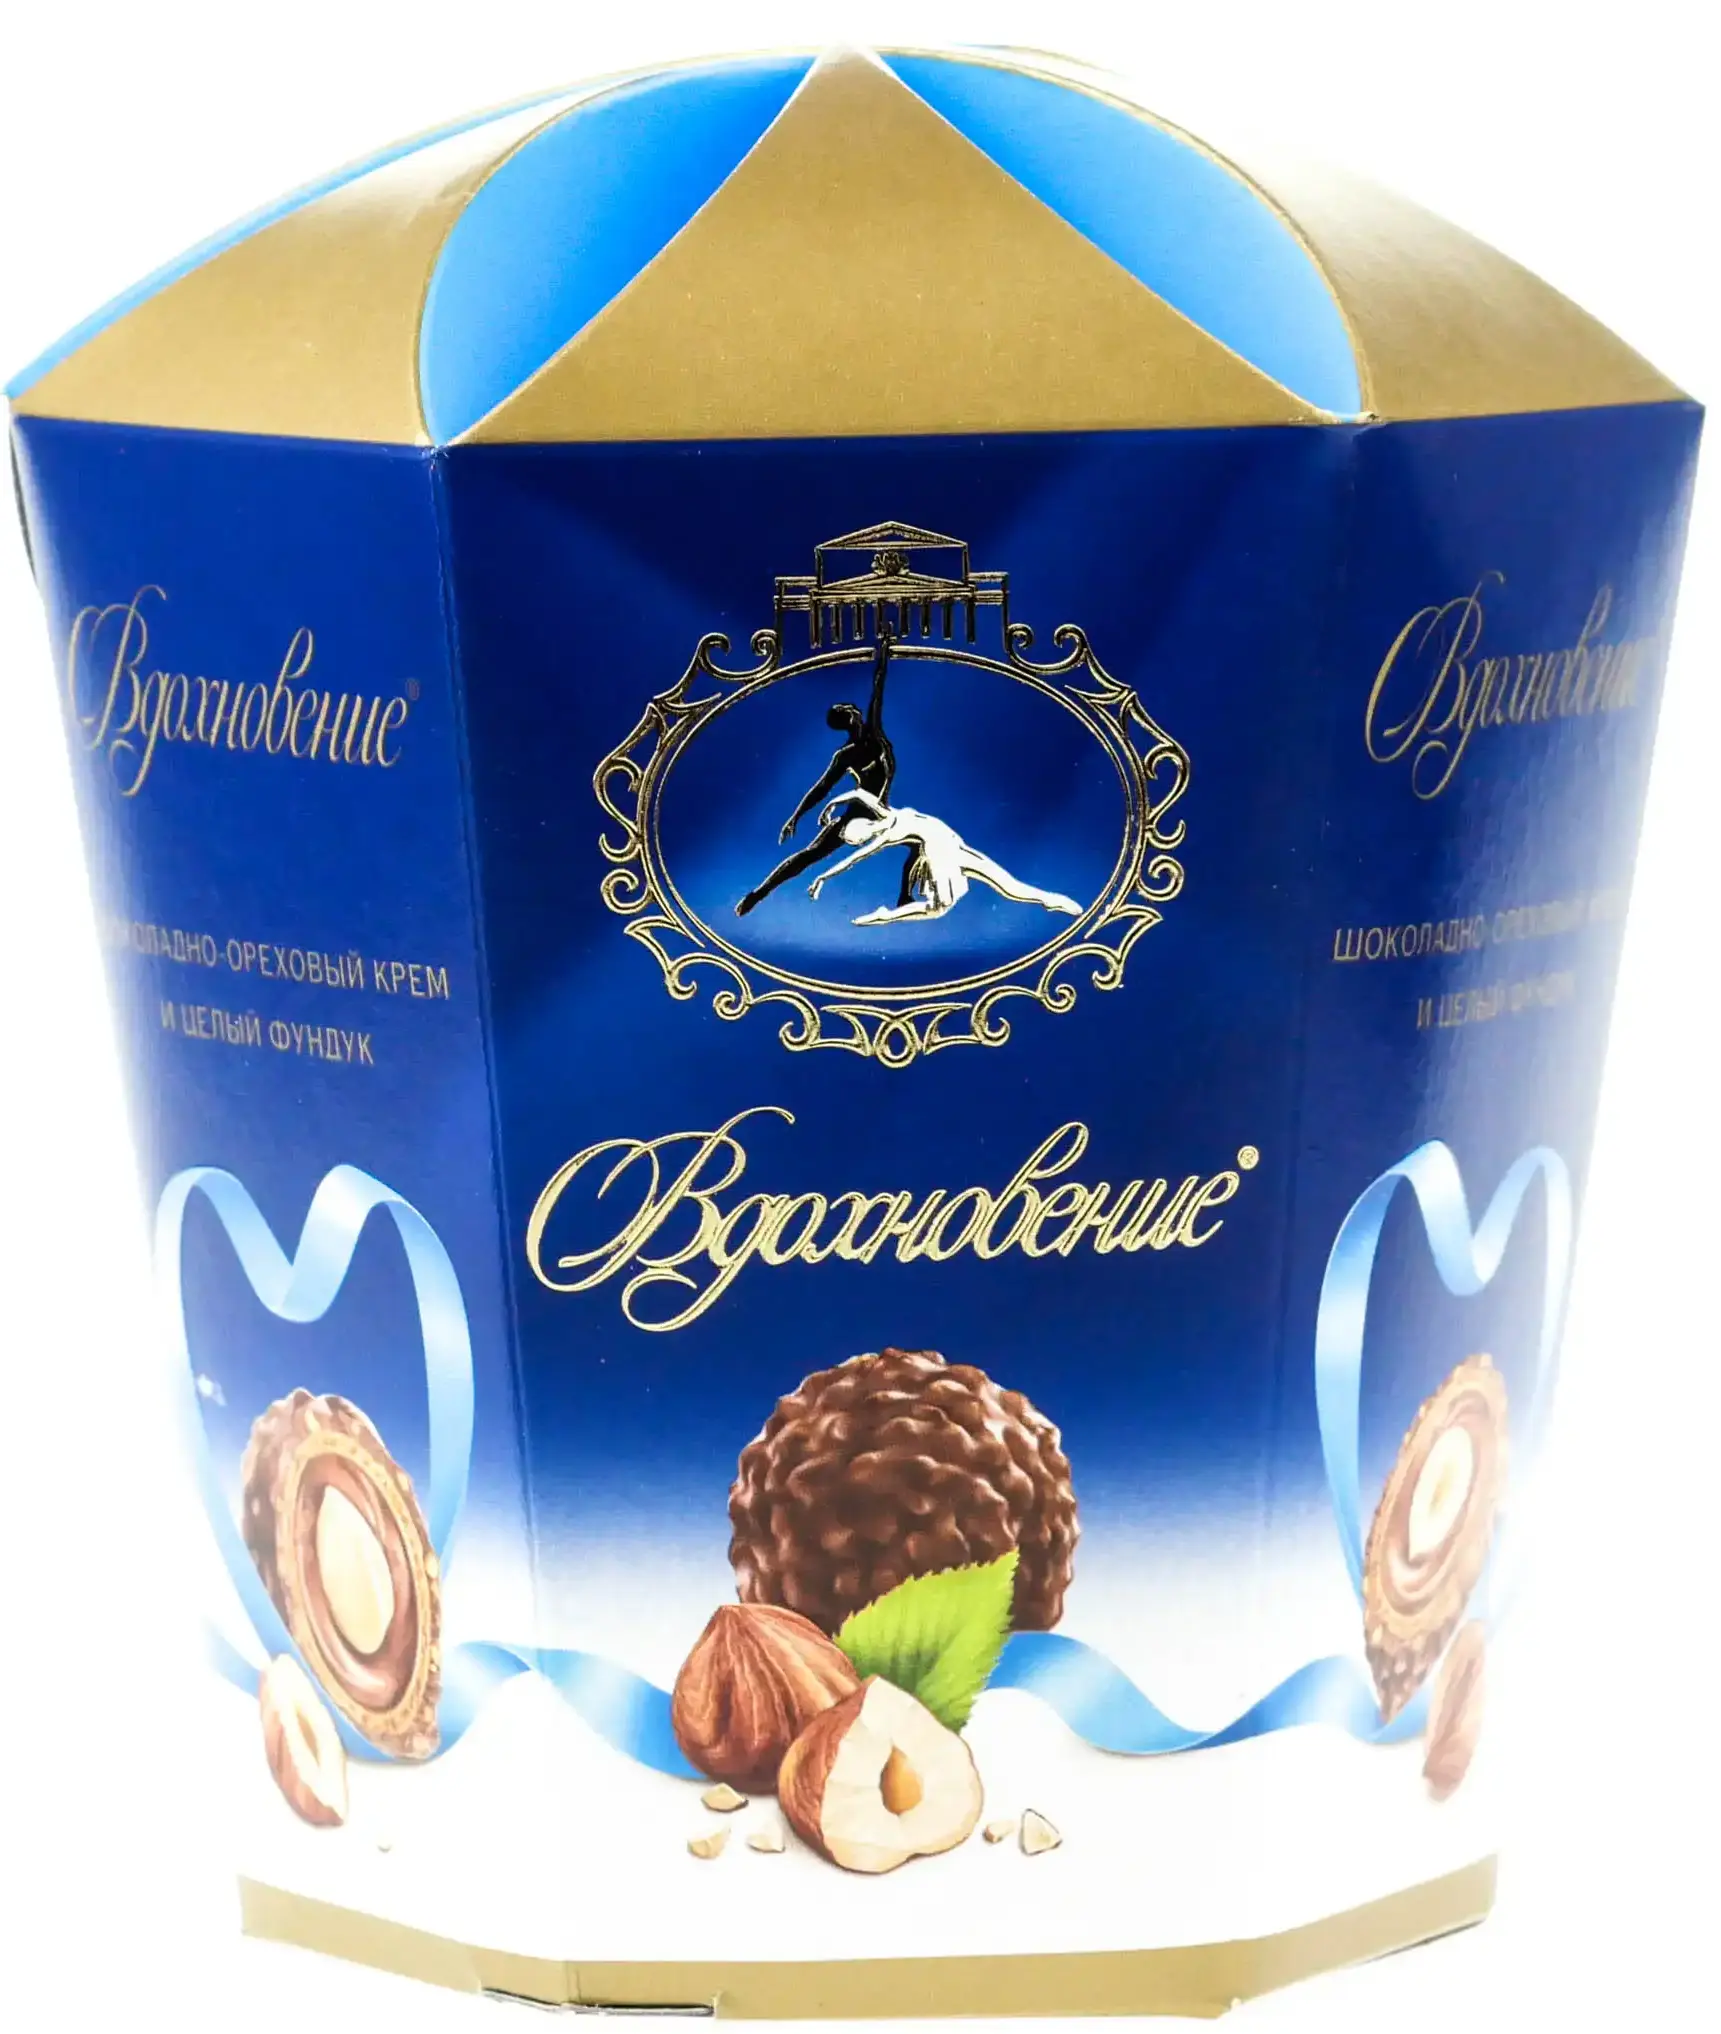 Конфеты Вдохновение с шоколадно-ореховым кремом и целым фундуком 150 гр